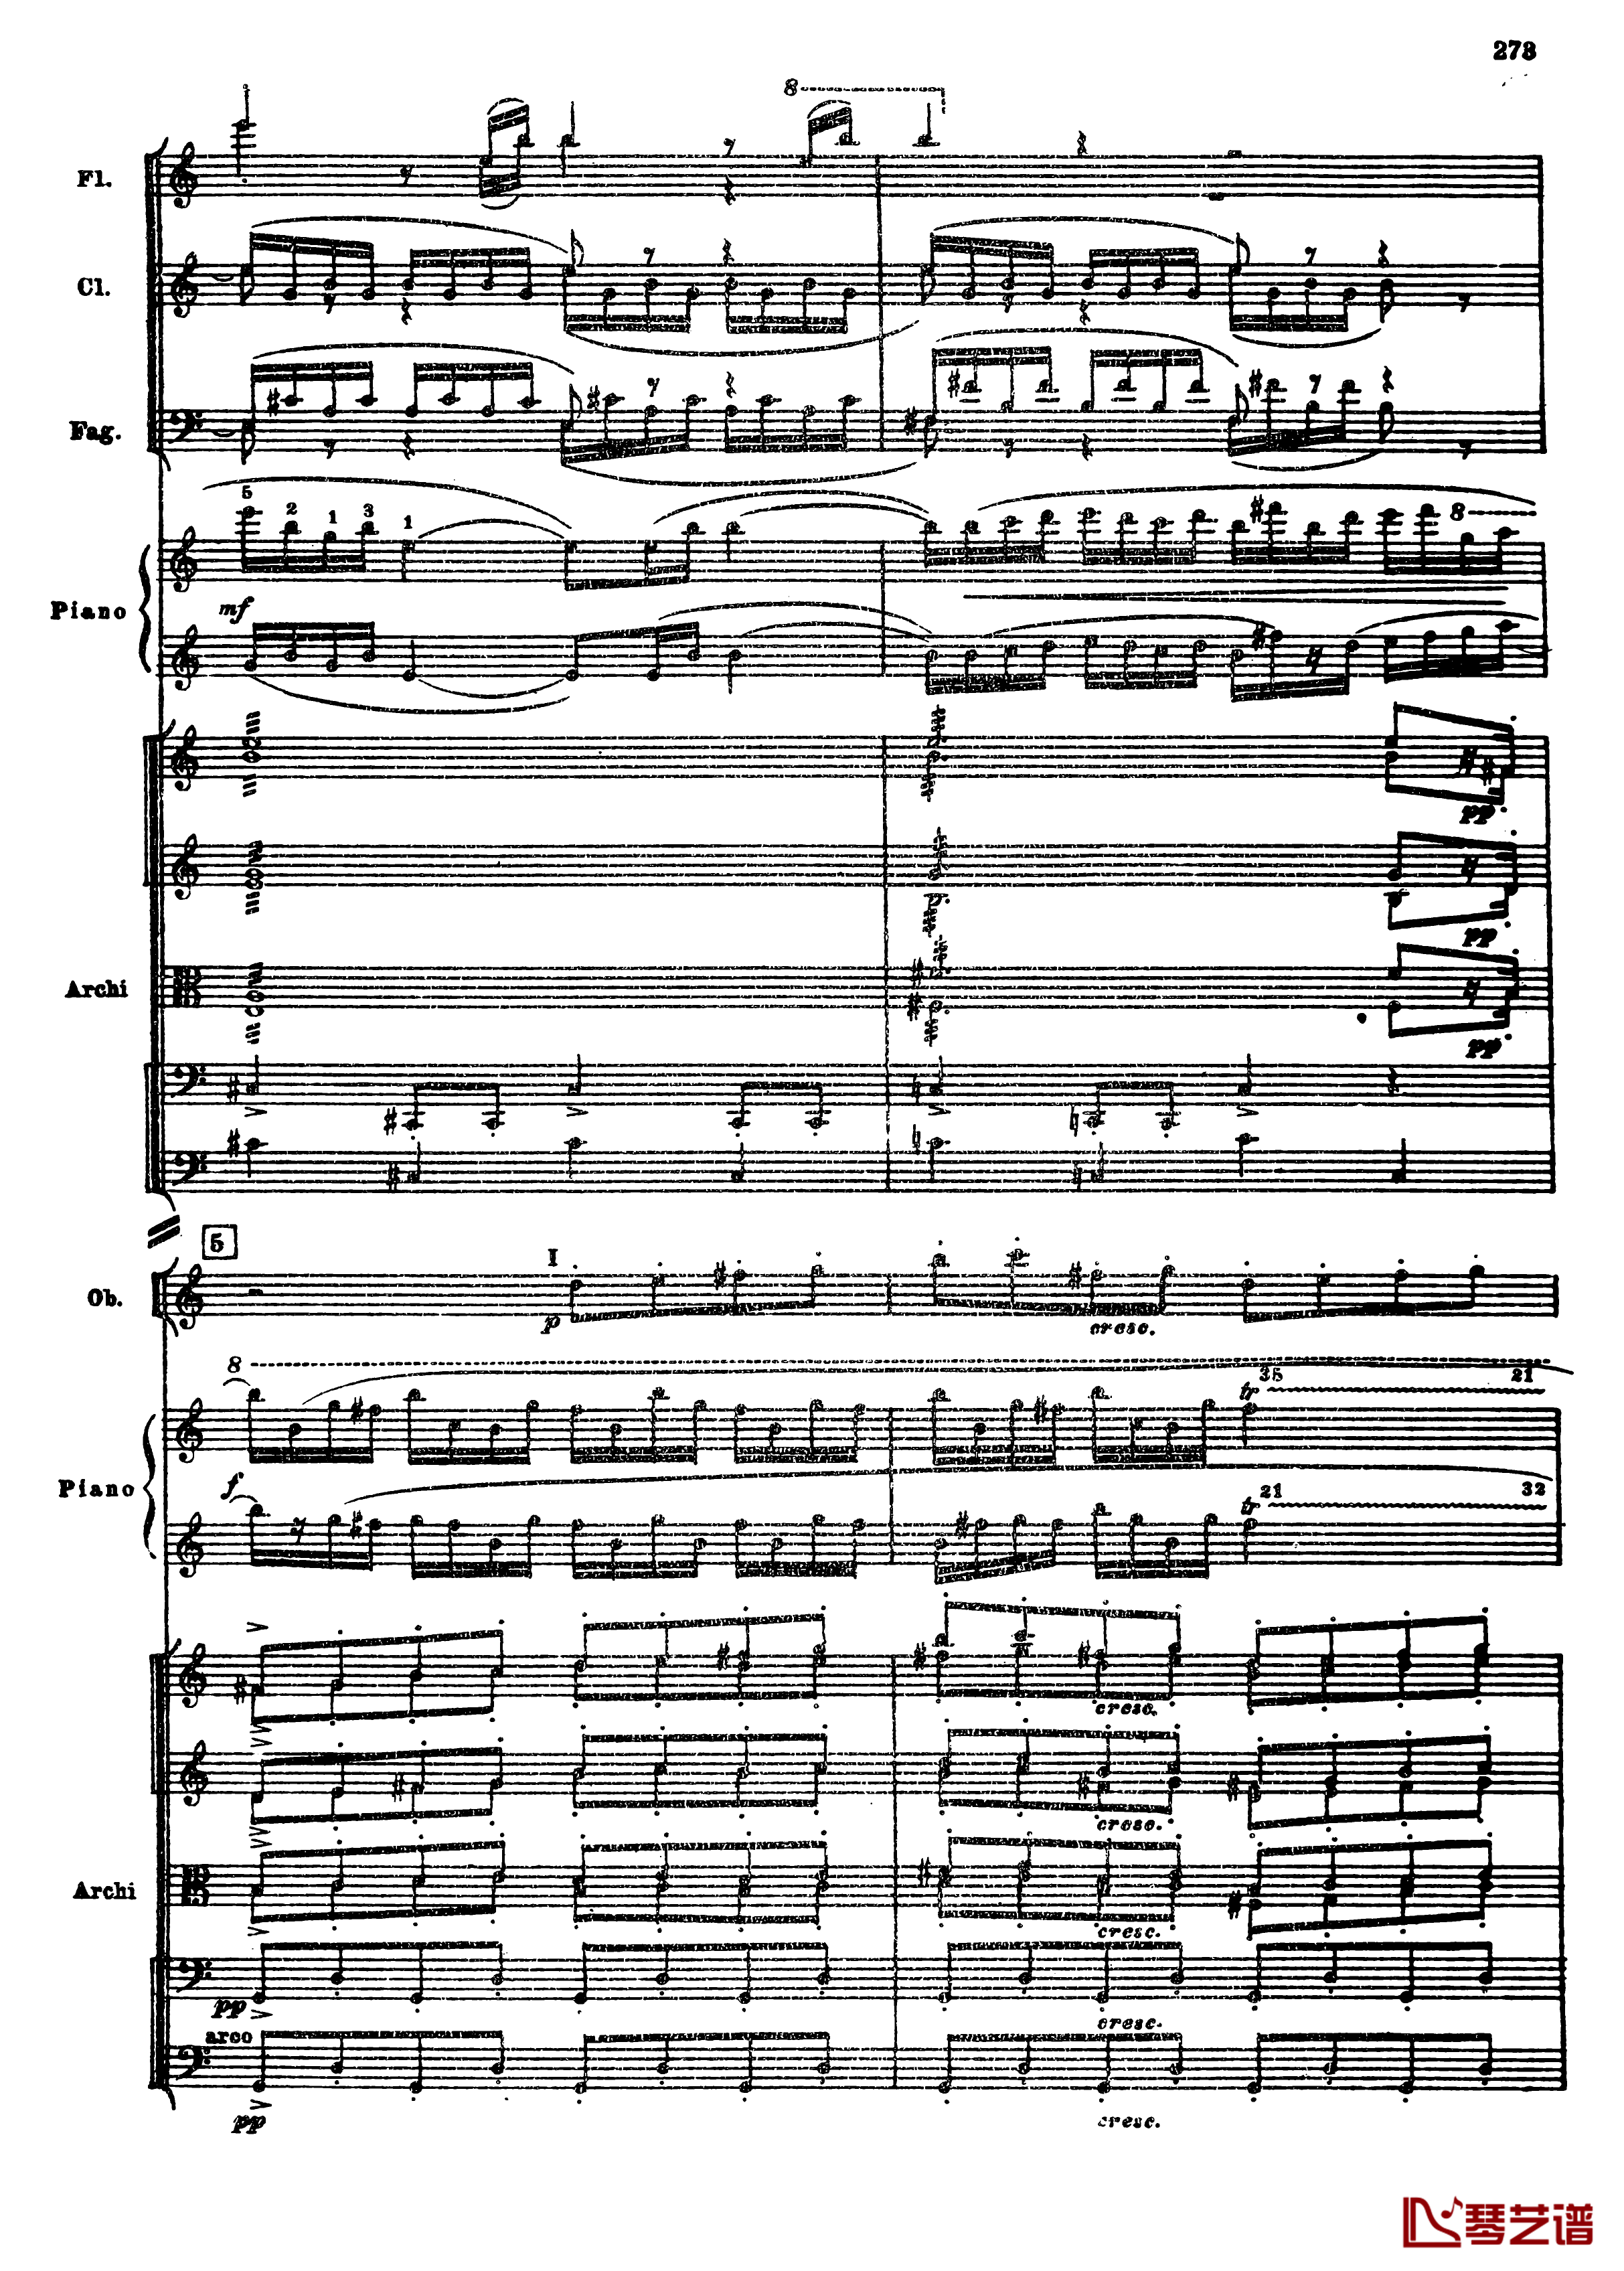 普罗科菲耶夫第三钢琴协奏曲钢琴谱-总谱-普罗科非耶夫5